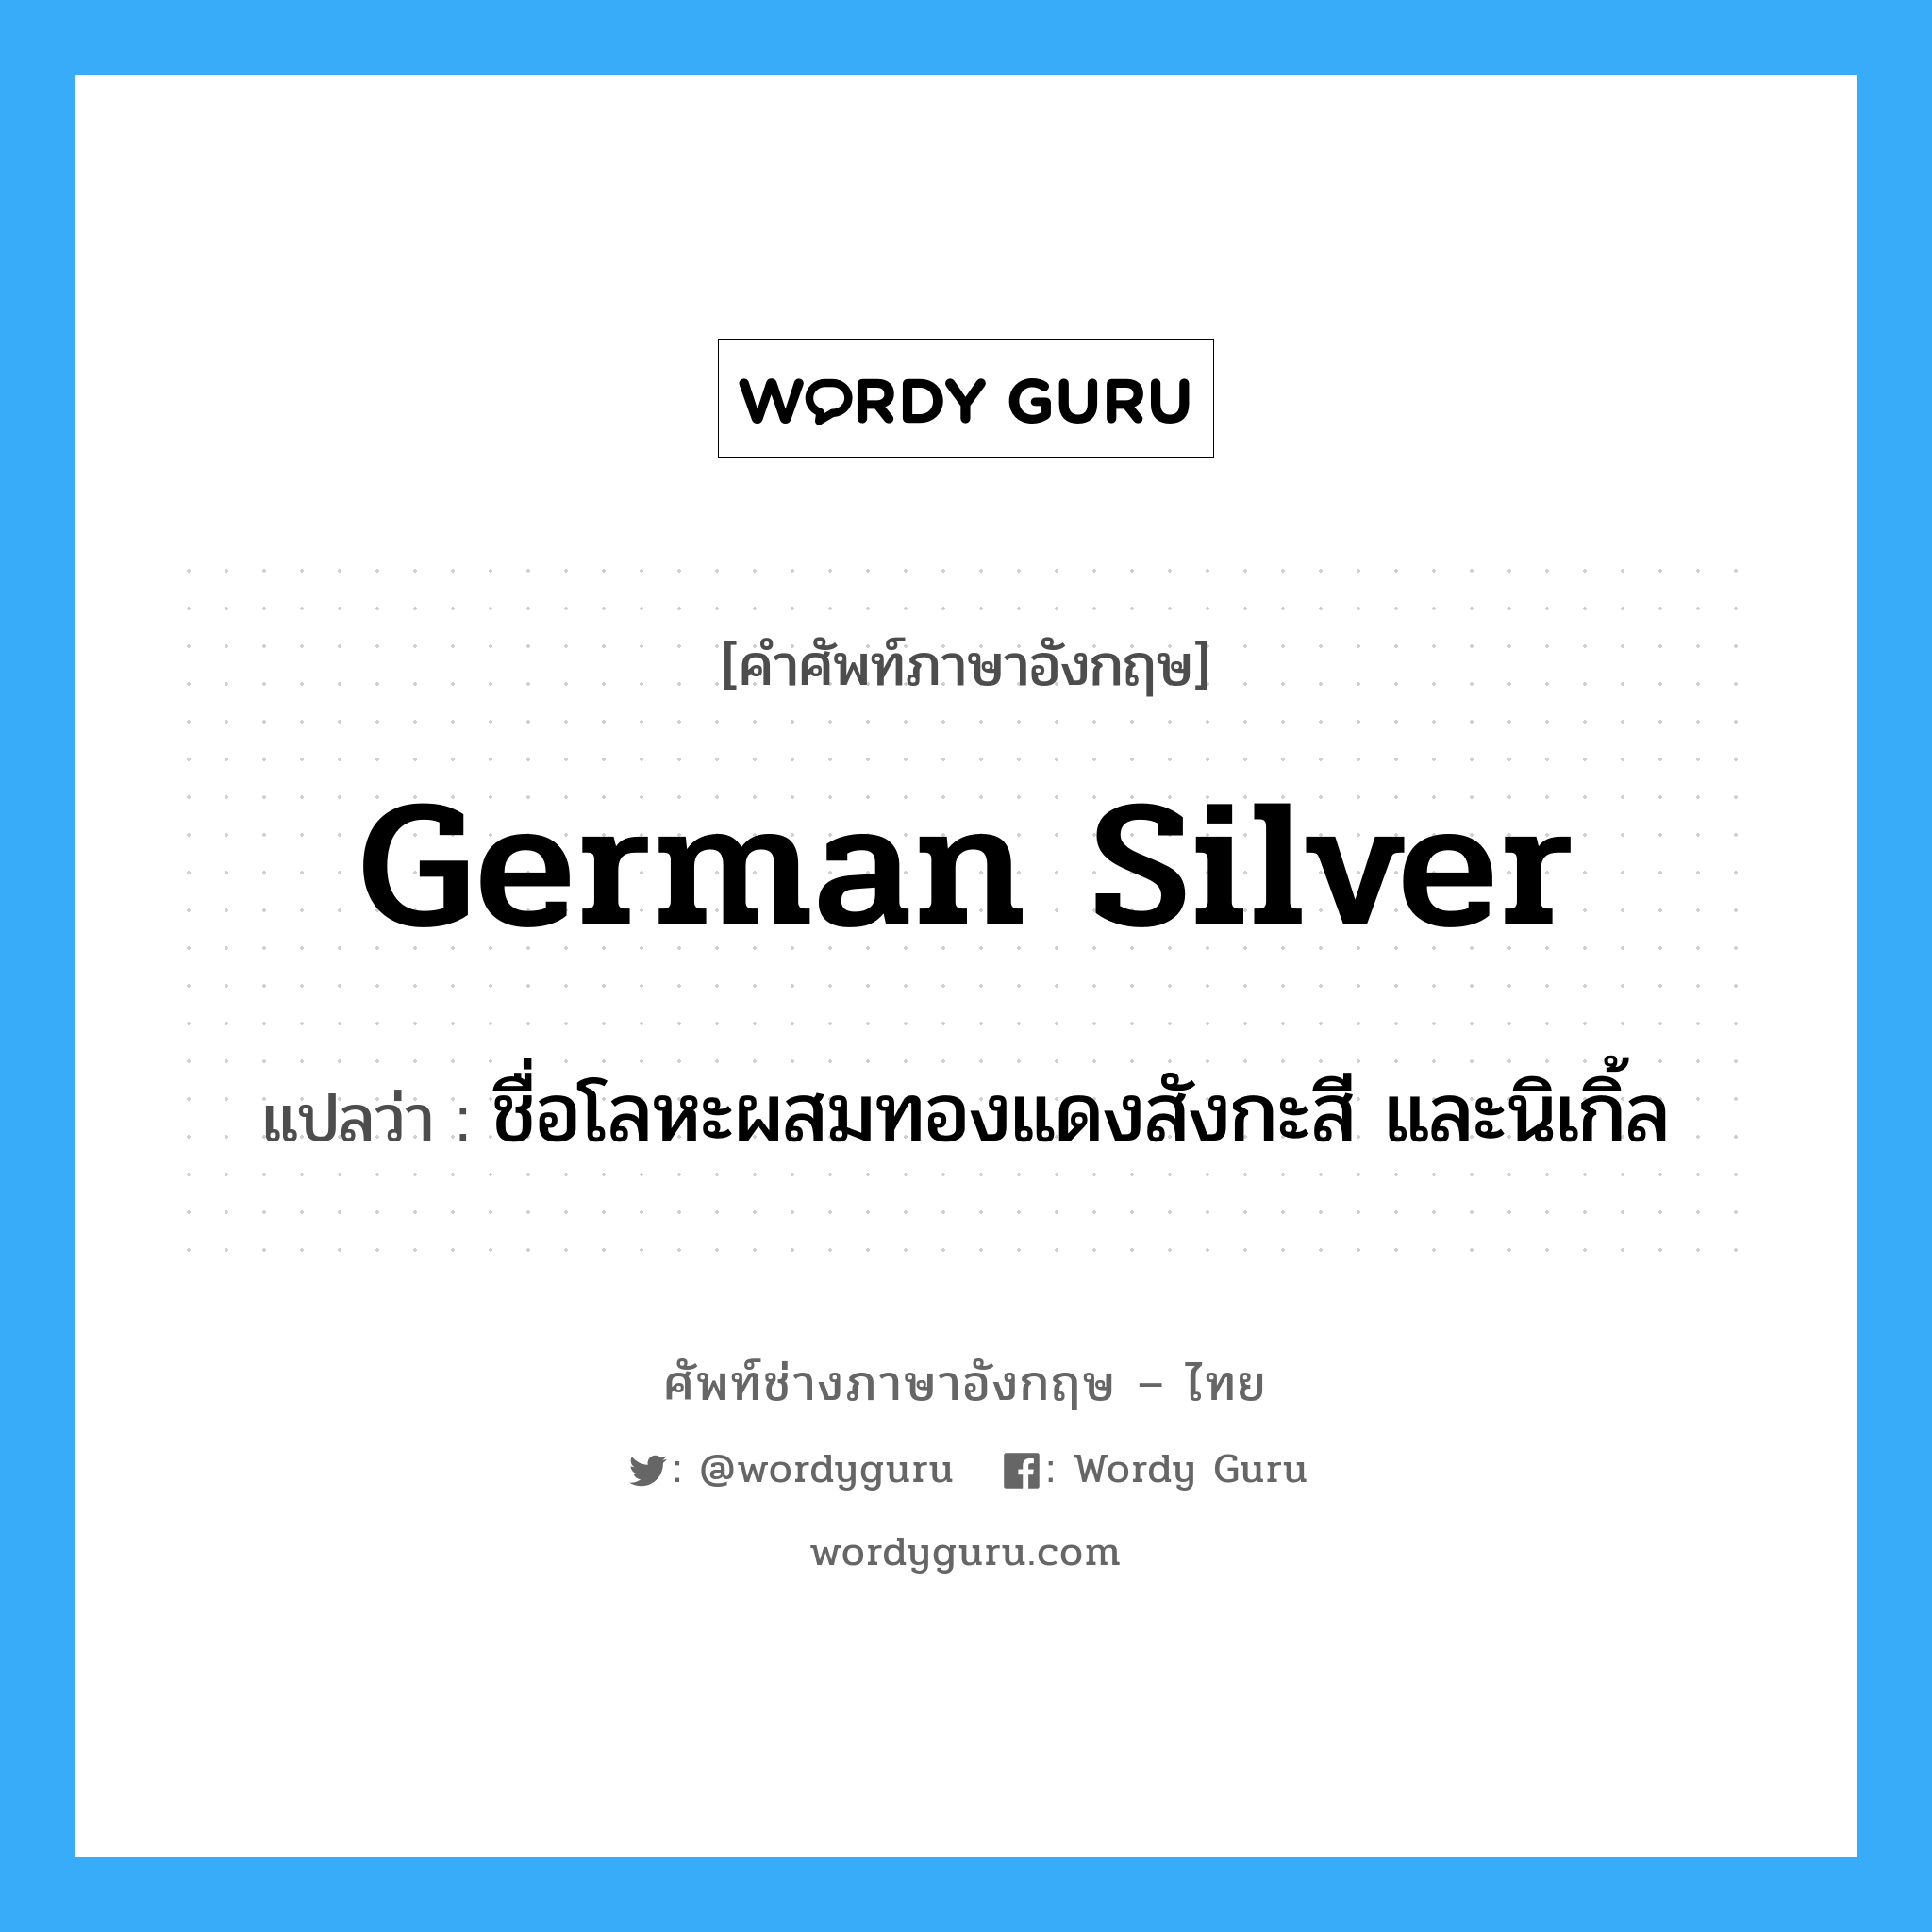 German silver แปลว่า?, คำศัพท์ช่างภาษาอังกฤษ - ไทย German silver คำศัพท์ภาษาอังกฤษ German silver แปลว่า ชื่อโลหะผสมทองแดงสังกะสี และนิเกิ้ล